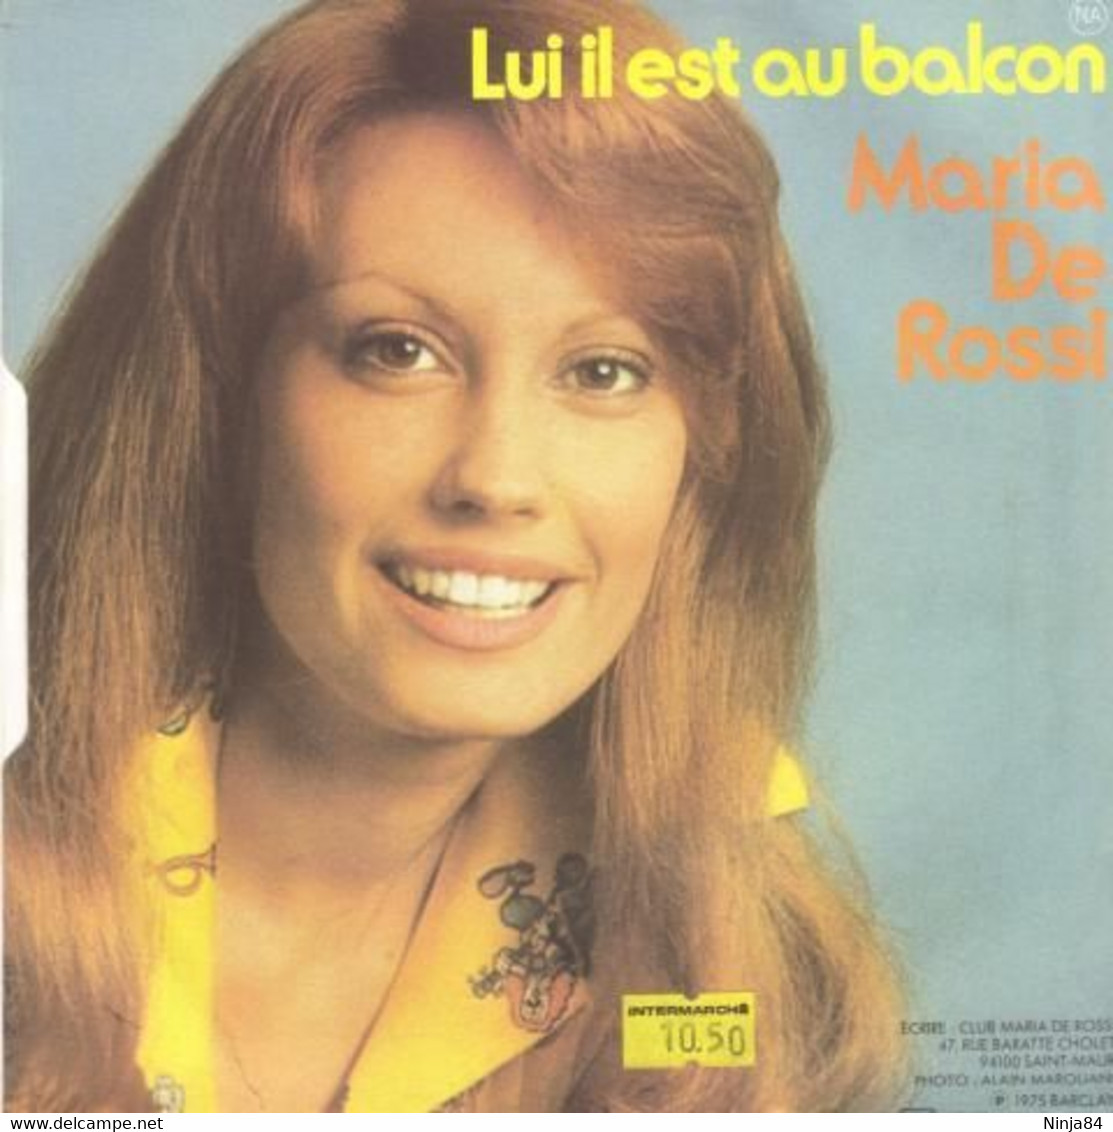 SP 45 RPM (7")  Maria De Rossi  "  Il Est Marseillais  " - Other - French Music